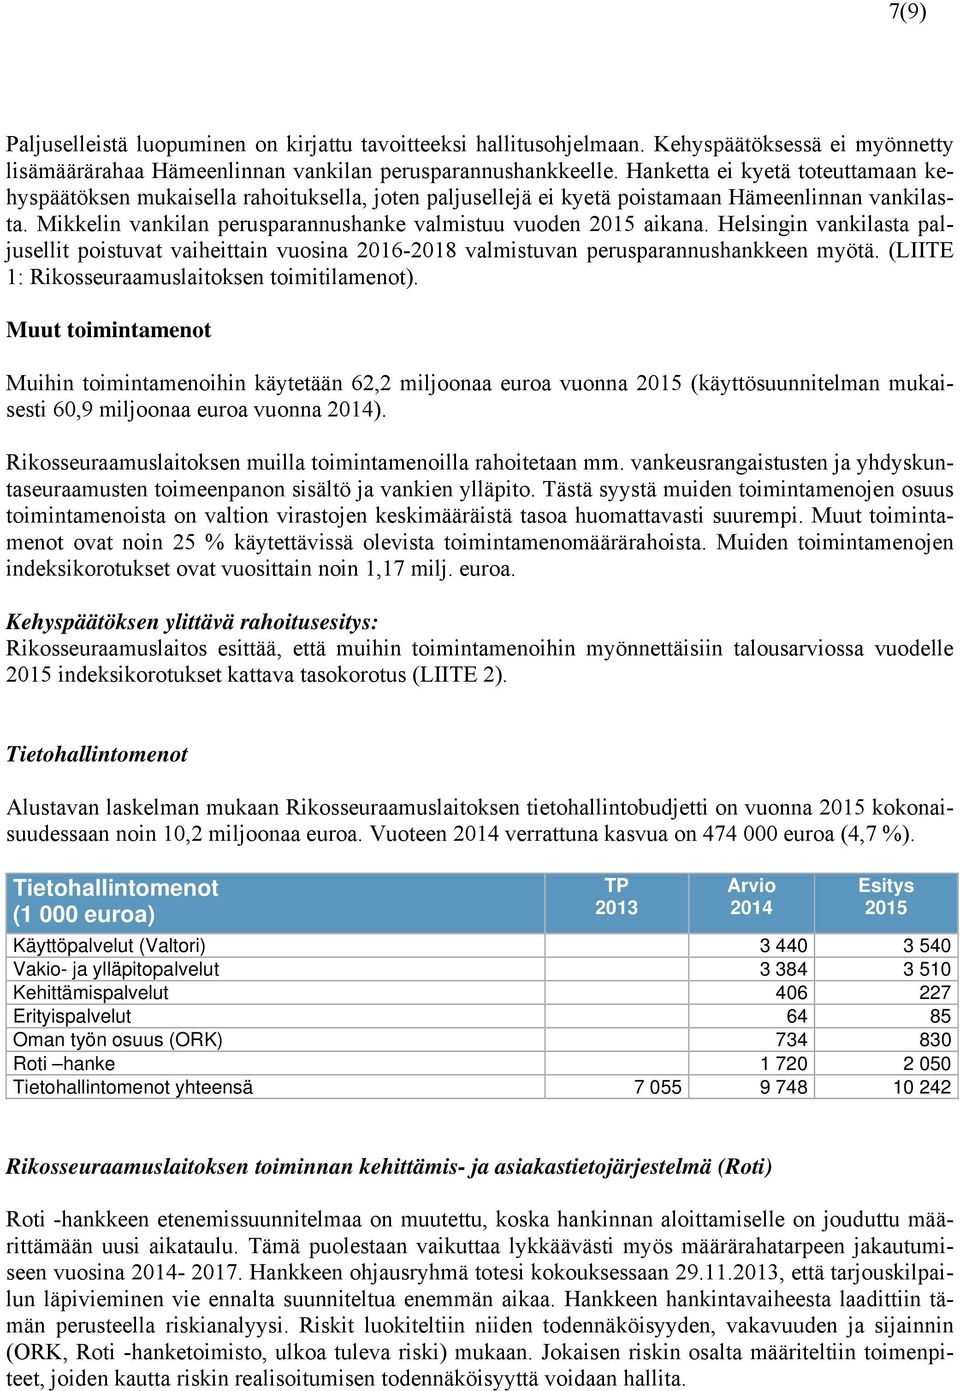 Helsingin vankilasta paljusellit poistuvat vaiheittain vuosina 2016-2018 valmistuvan perusparannushankkeen myötä. (LIITE 1: Rikosseuraamuslaitoksen toimitilamenot).